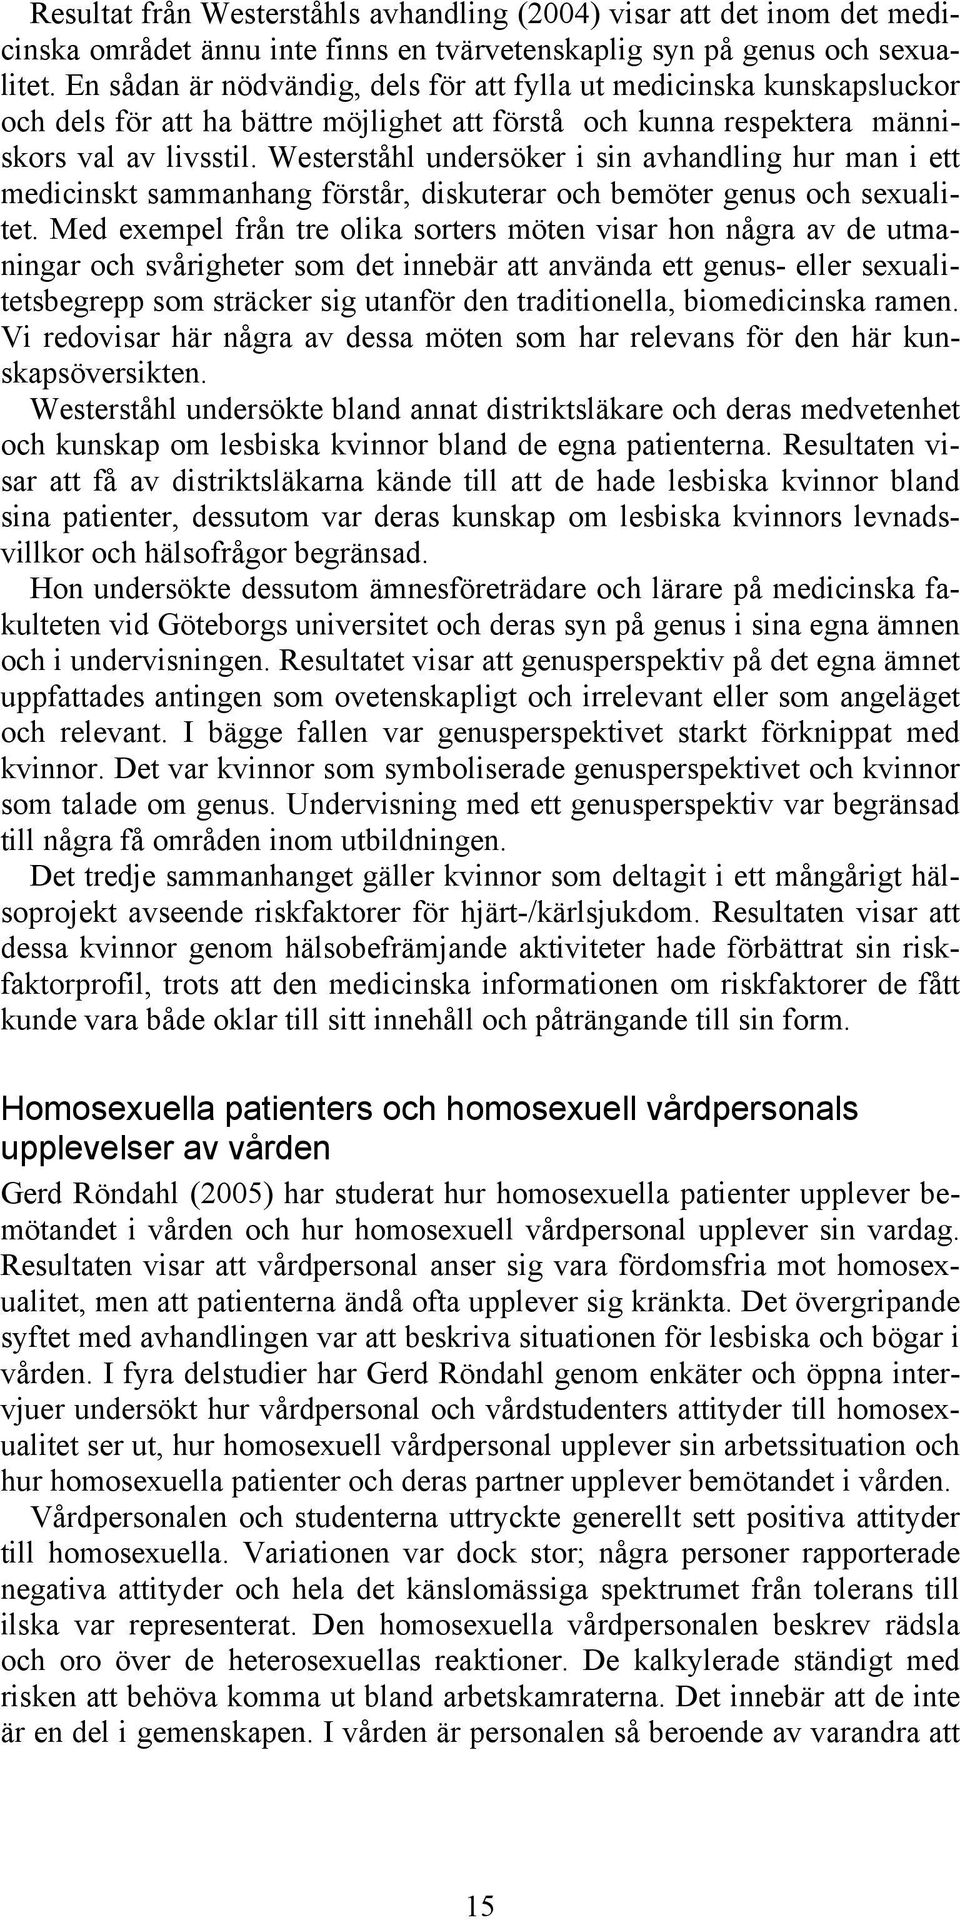 Westerståhl undersöker i sin avhandling hur man i ett medicinskt sammanhang förstår, diskuterar och bemöter genus och sexualitet.